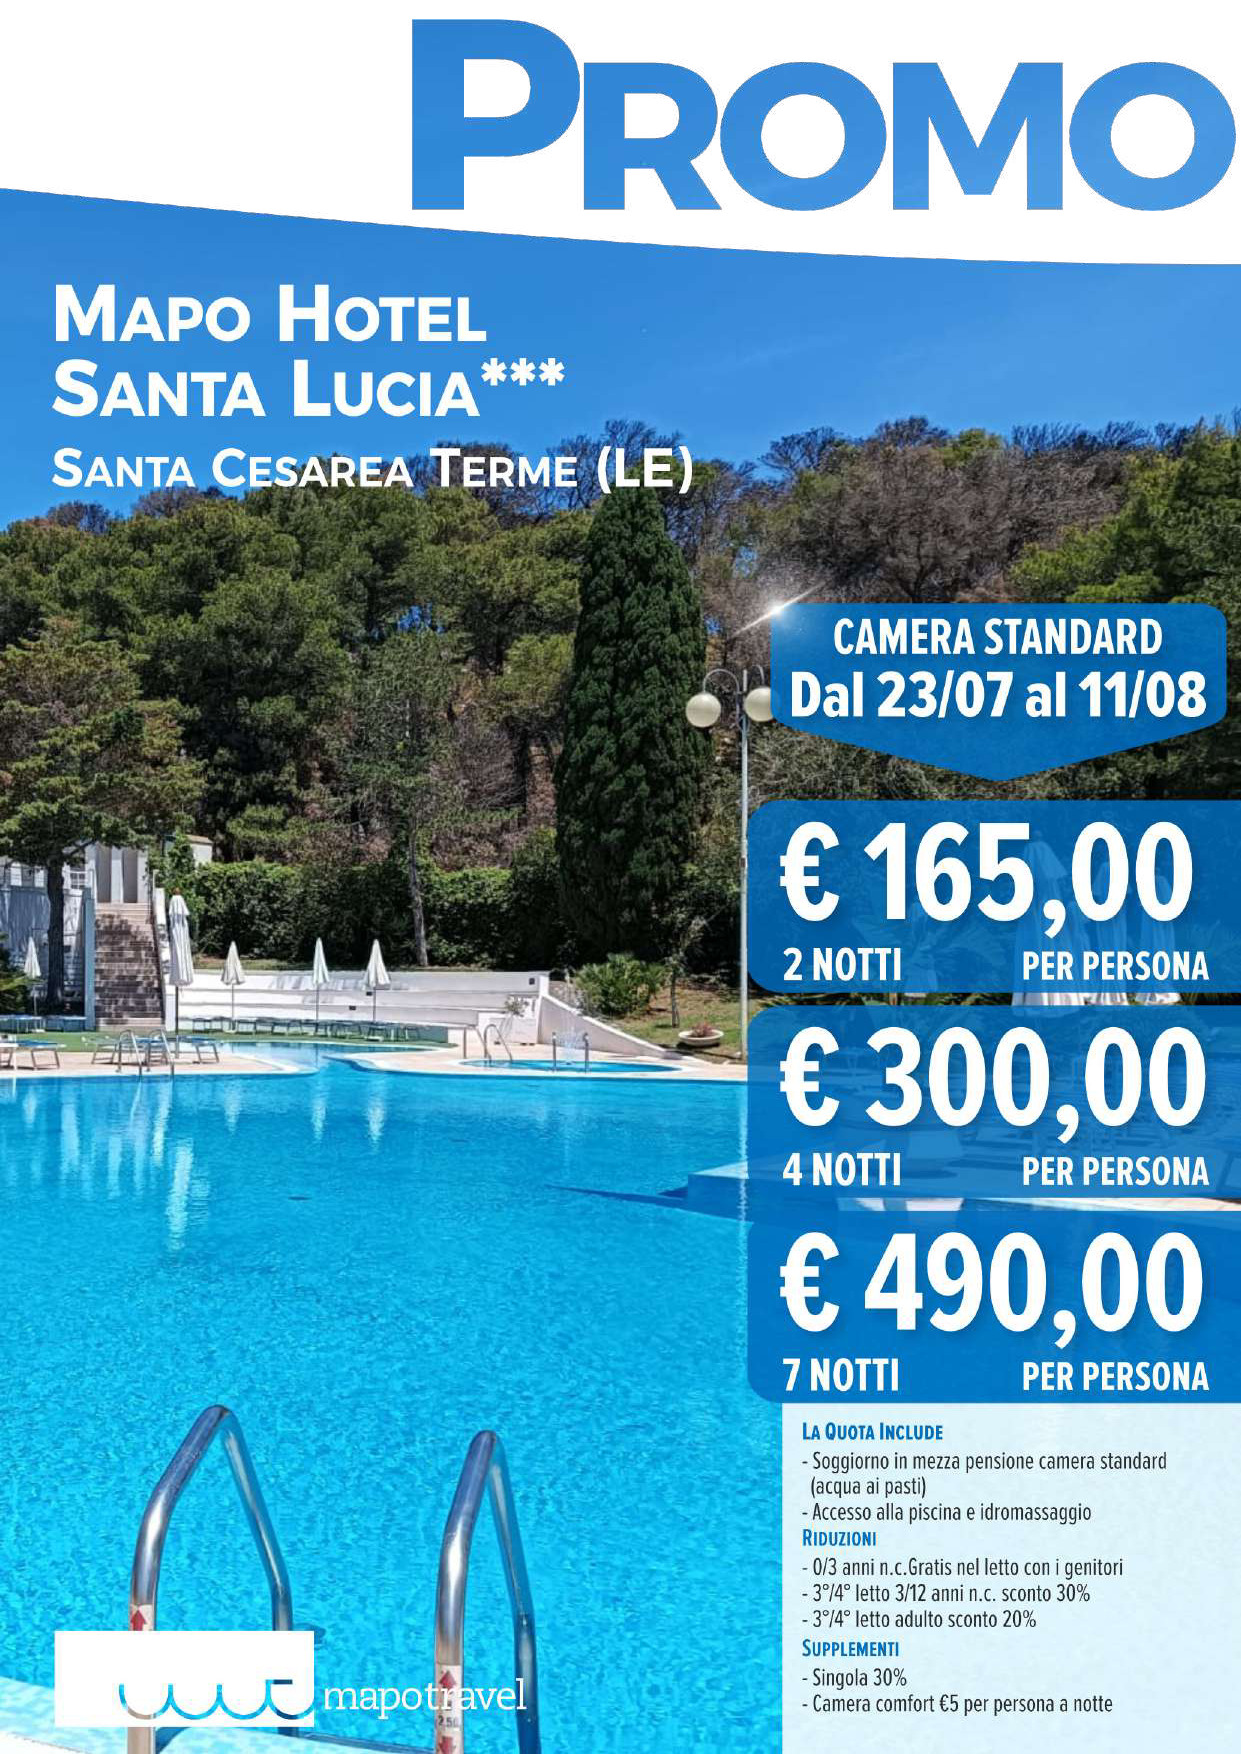 Promo Mapo Hotel Santa Lucia dal 23 Luglio al 10 Agosto - pacchetto notti